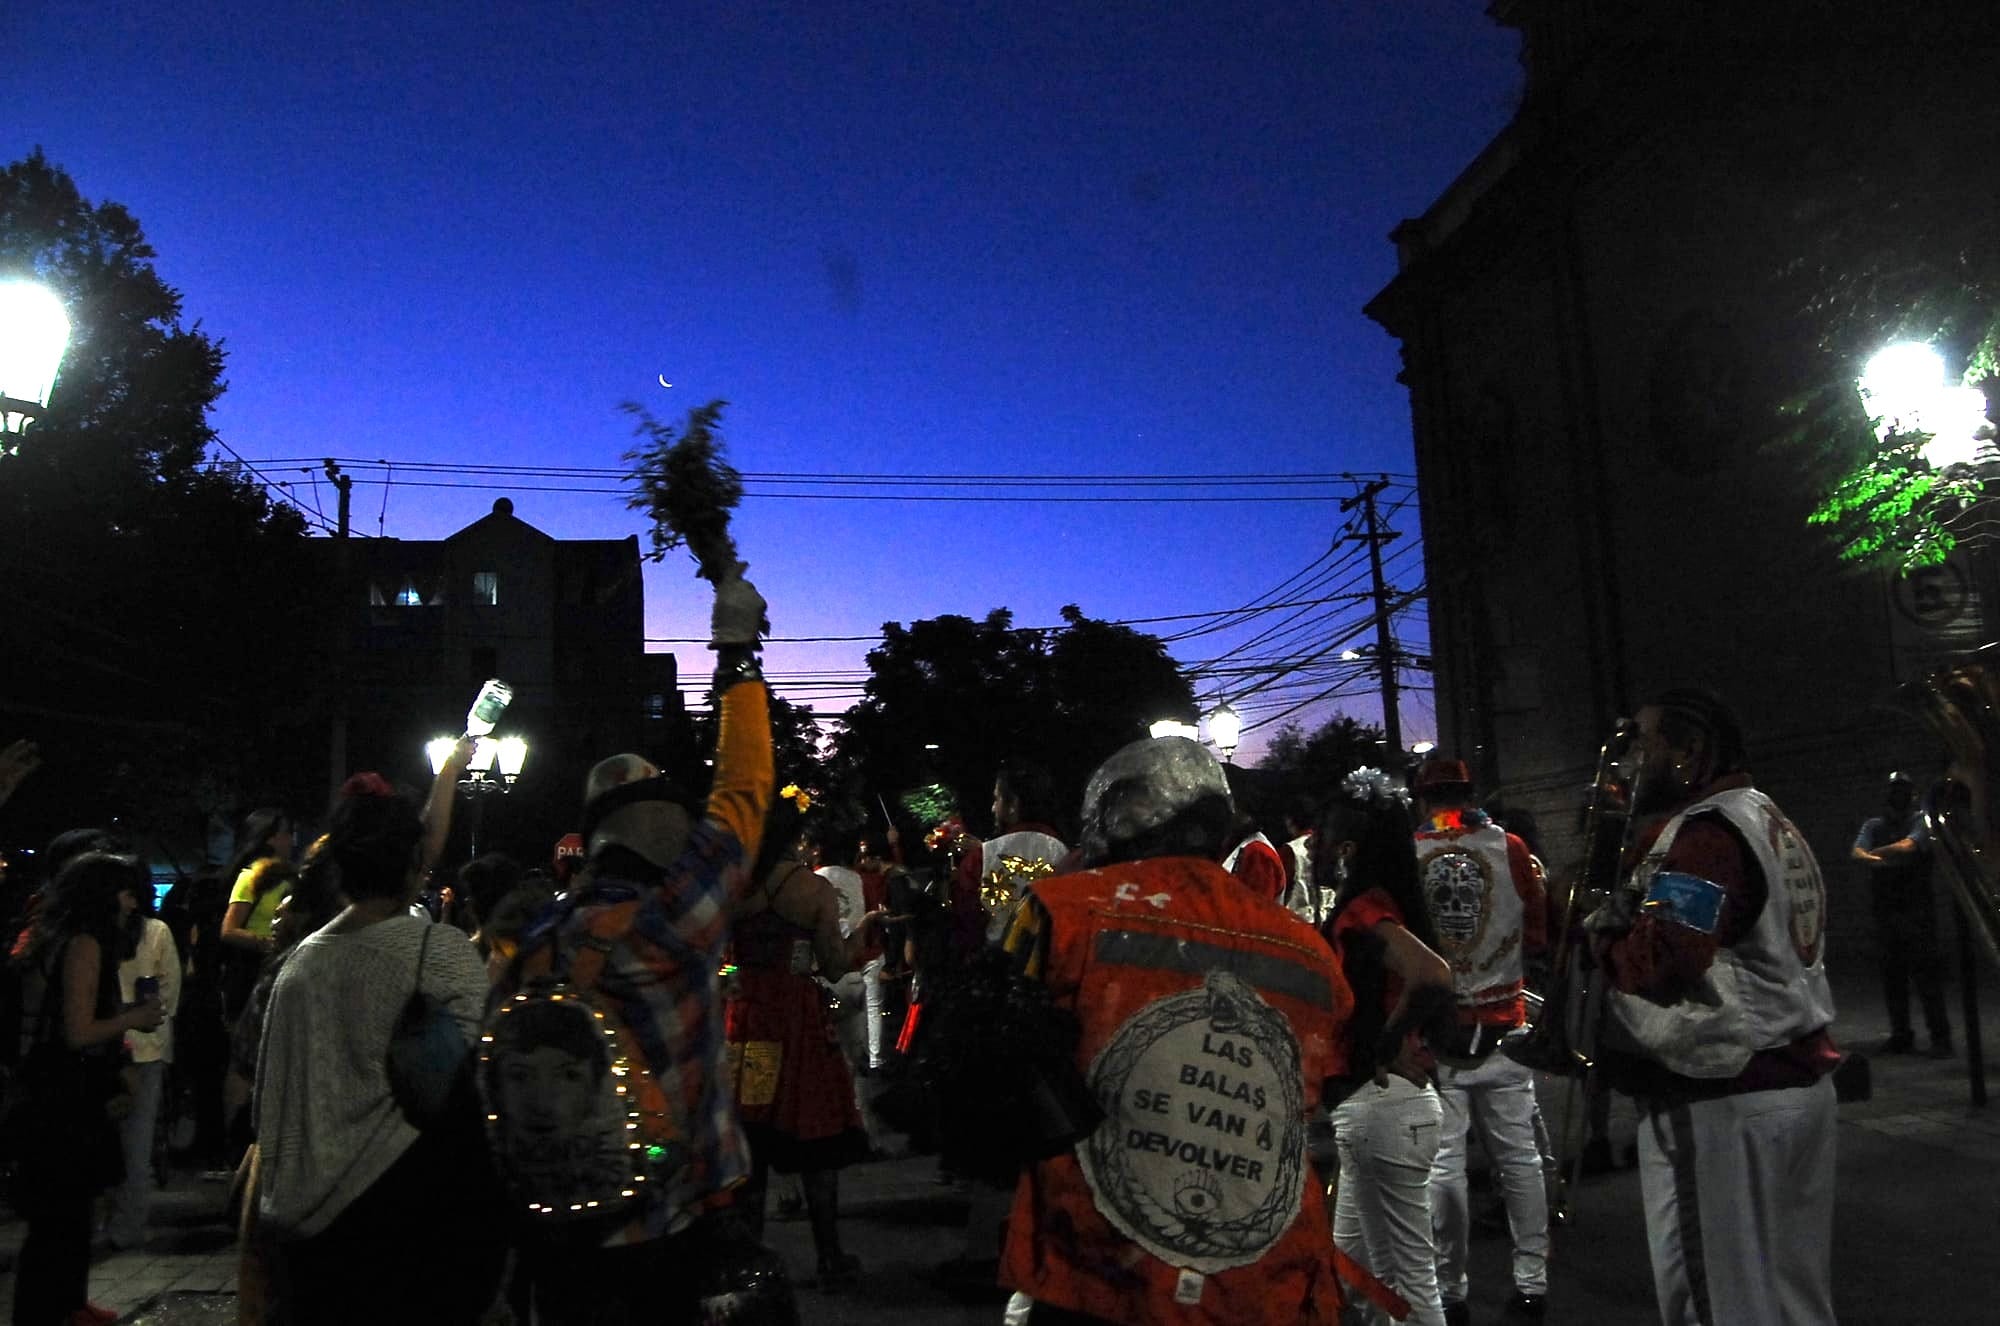 Tambores, danza y rebeldía en Santiago de Chile